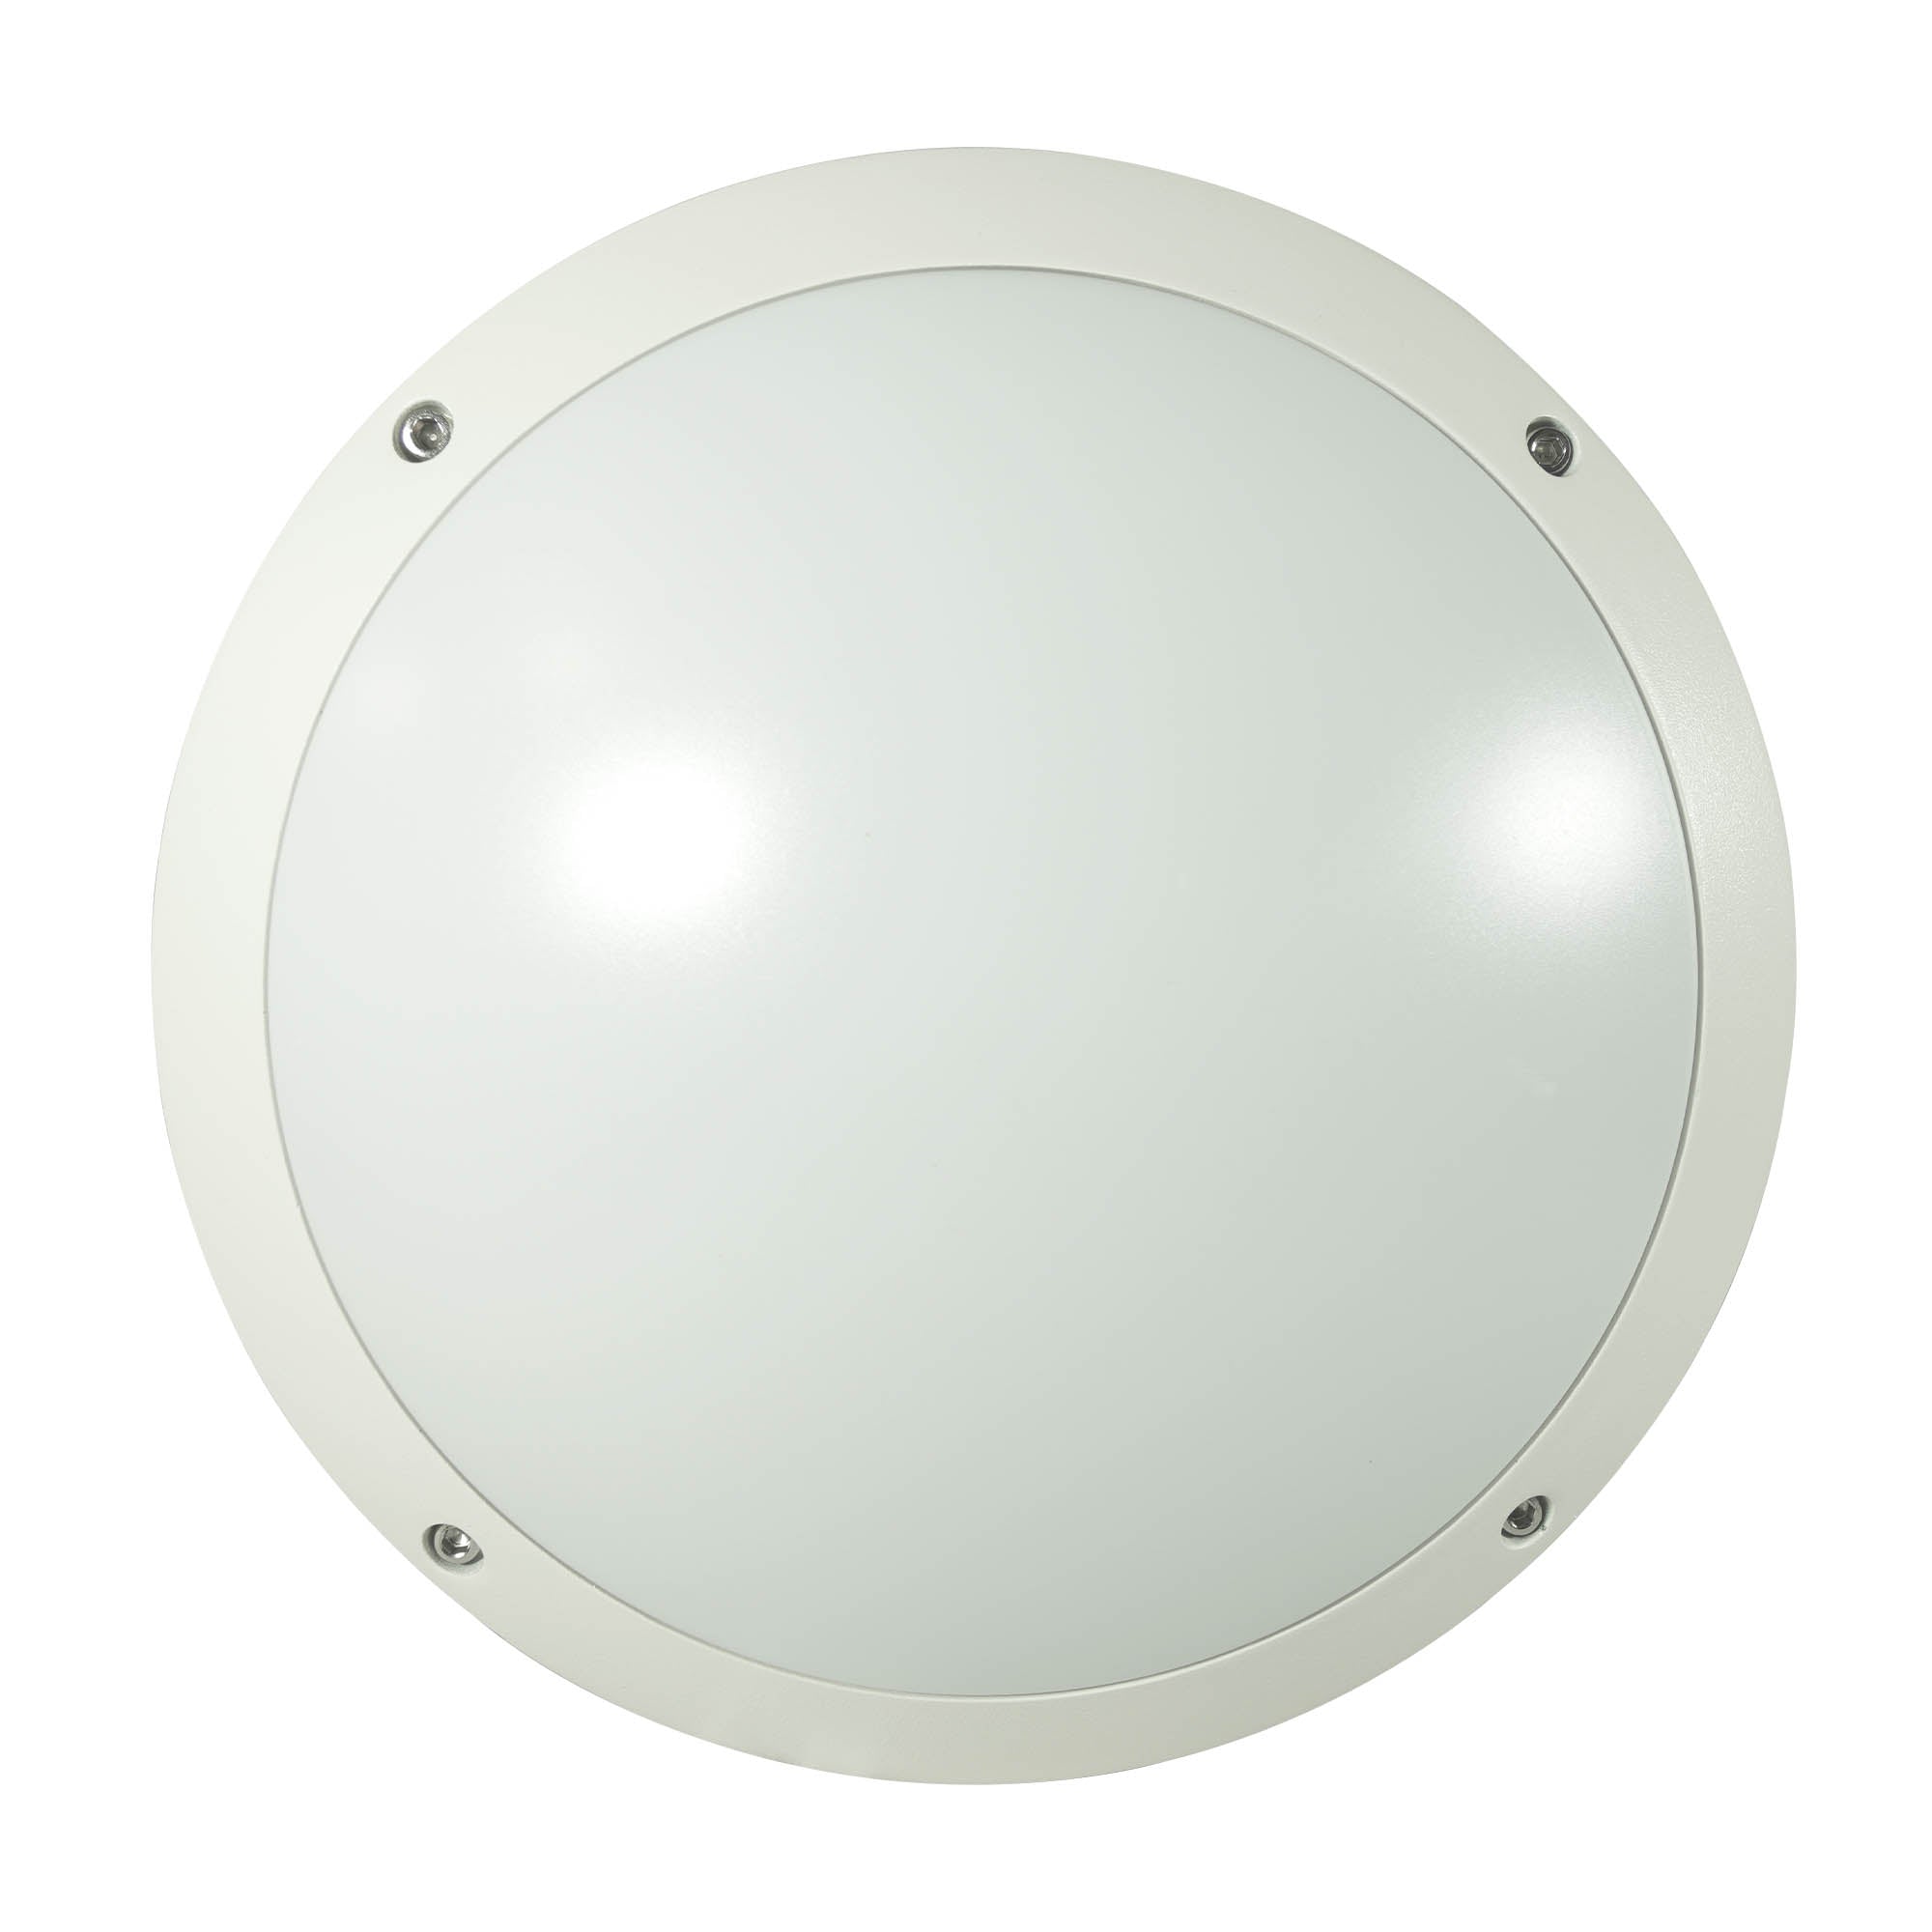 Lámpara decorativa para sobreponer en muro, blanco, aluminio, MF-4405.B